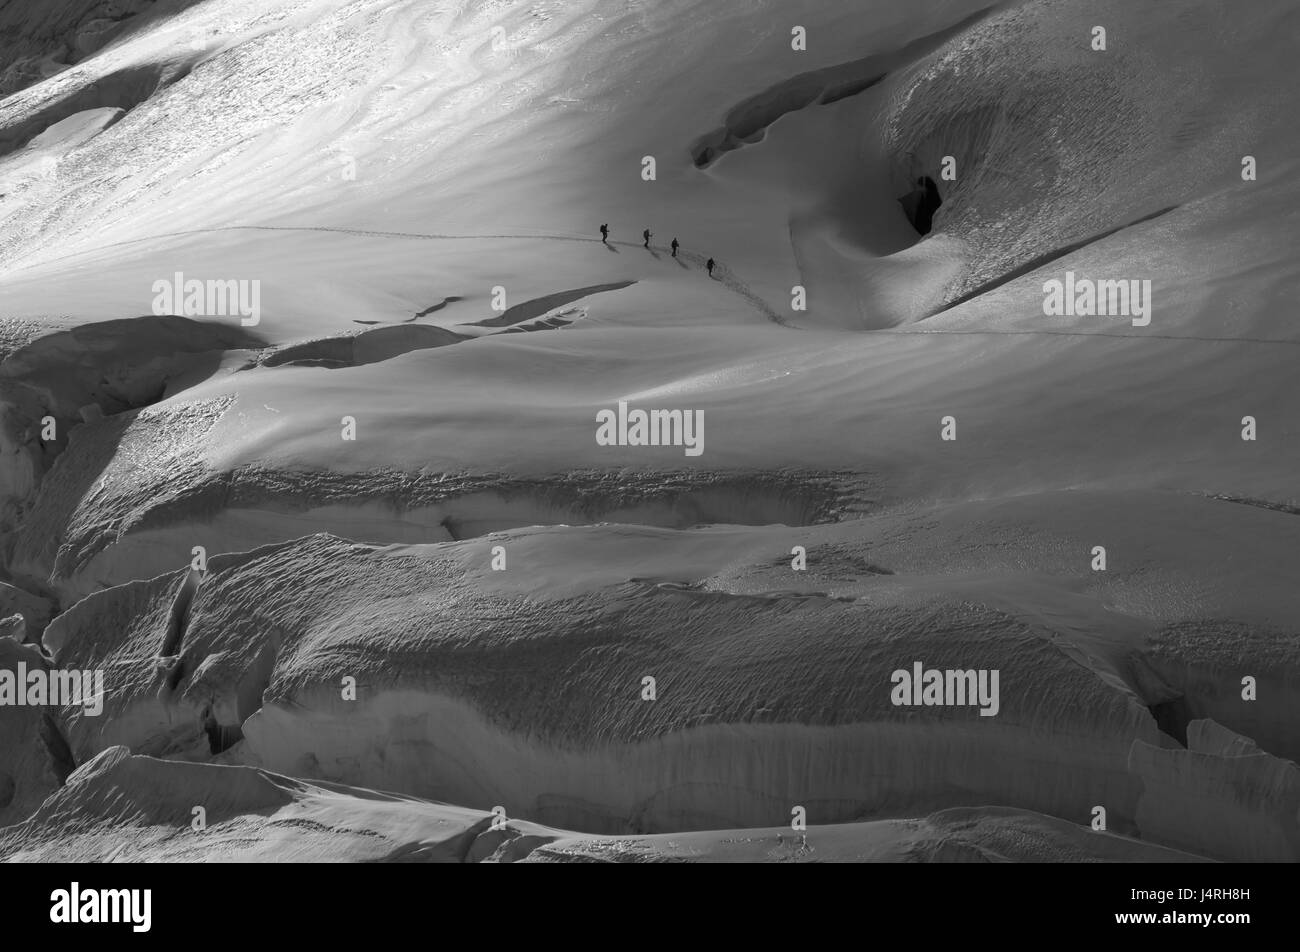 Corda, tour walker, quattro, ghiacciaio, il ghiacciaio crepe, light tuning, in bianco e nero, Svizzera, Canton Berna, della Vergine, col ghiacciaio di Aletsch, Foto Stock